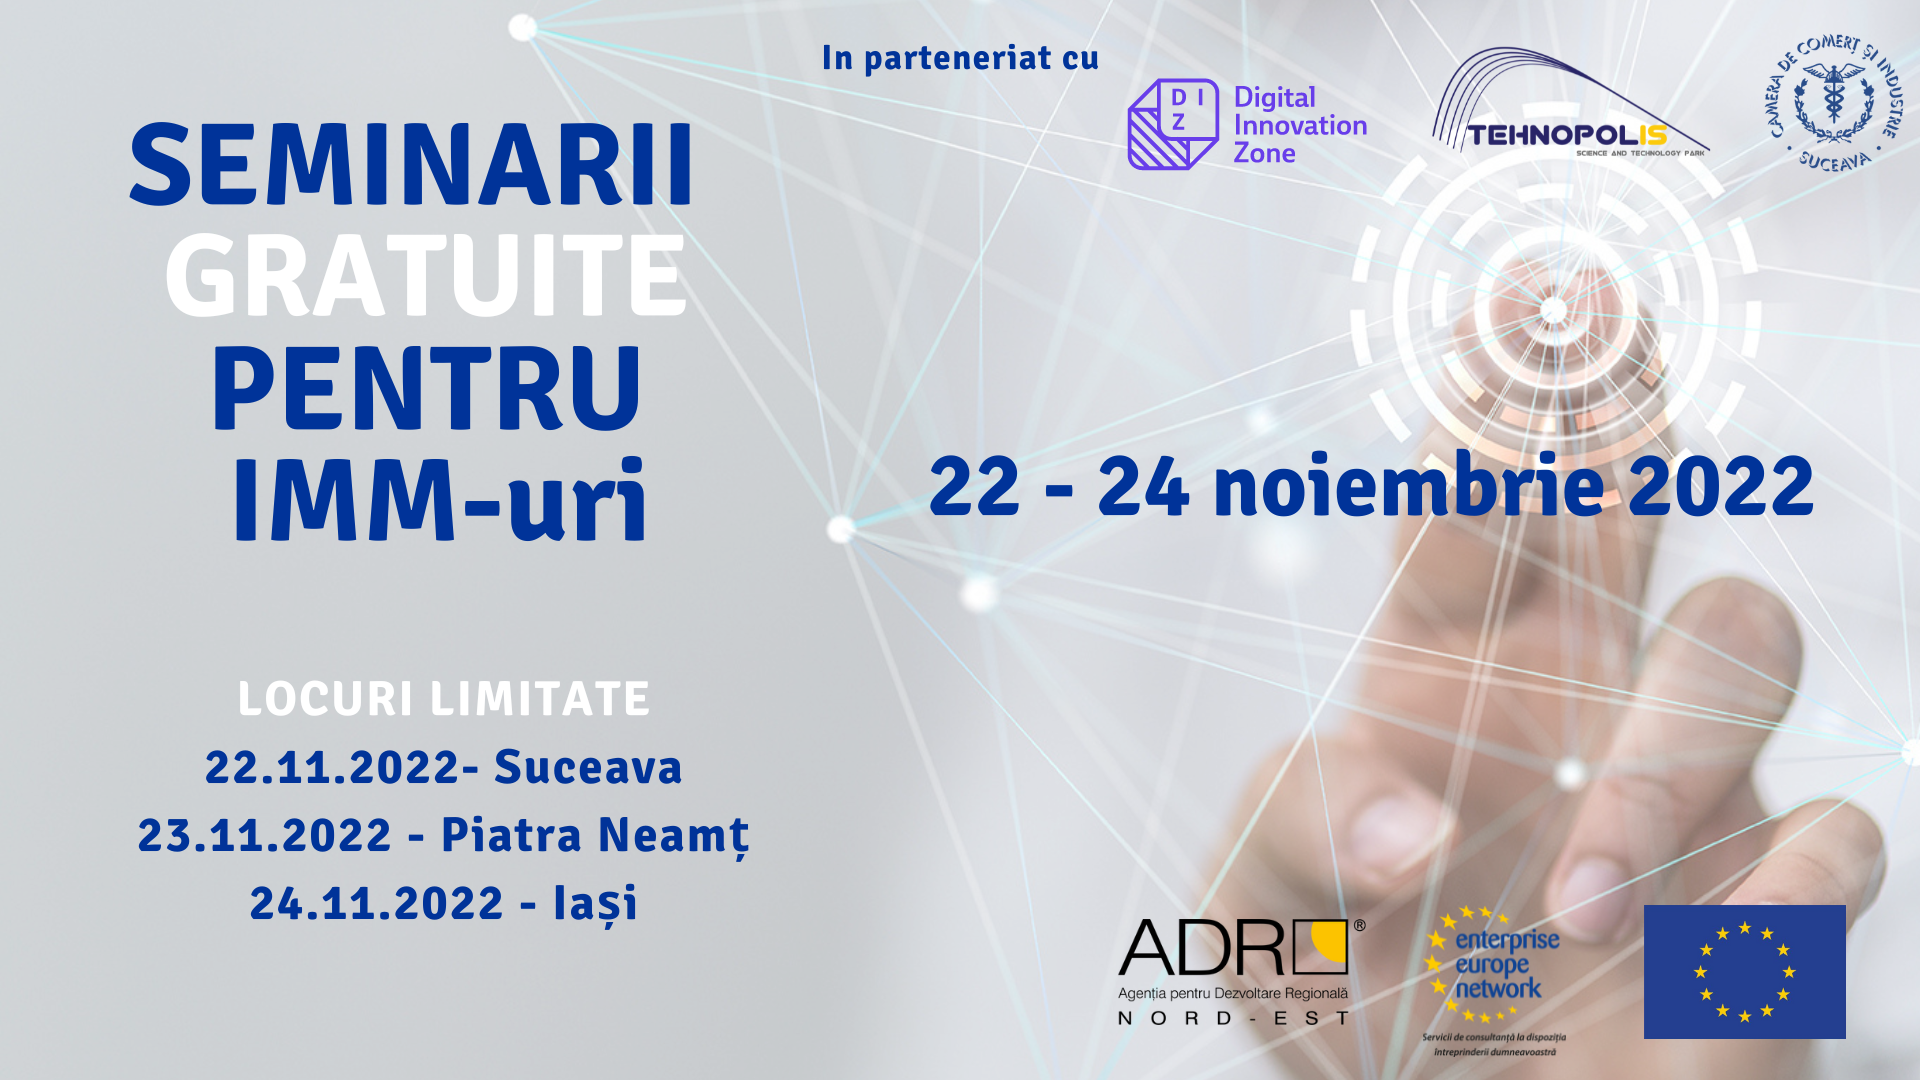 Rețeaua Enterprise Europe Network în sprijinul afacerii tale! Seminarii gratuite pentru IMM-uri, 22-24 noiembrie 2022